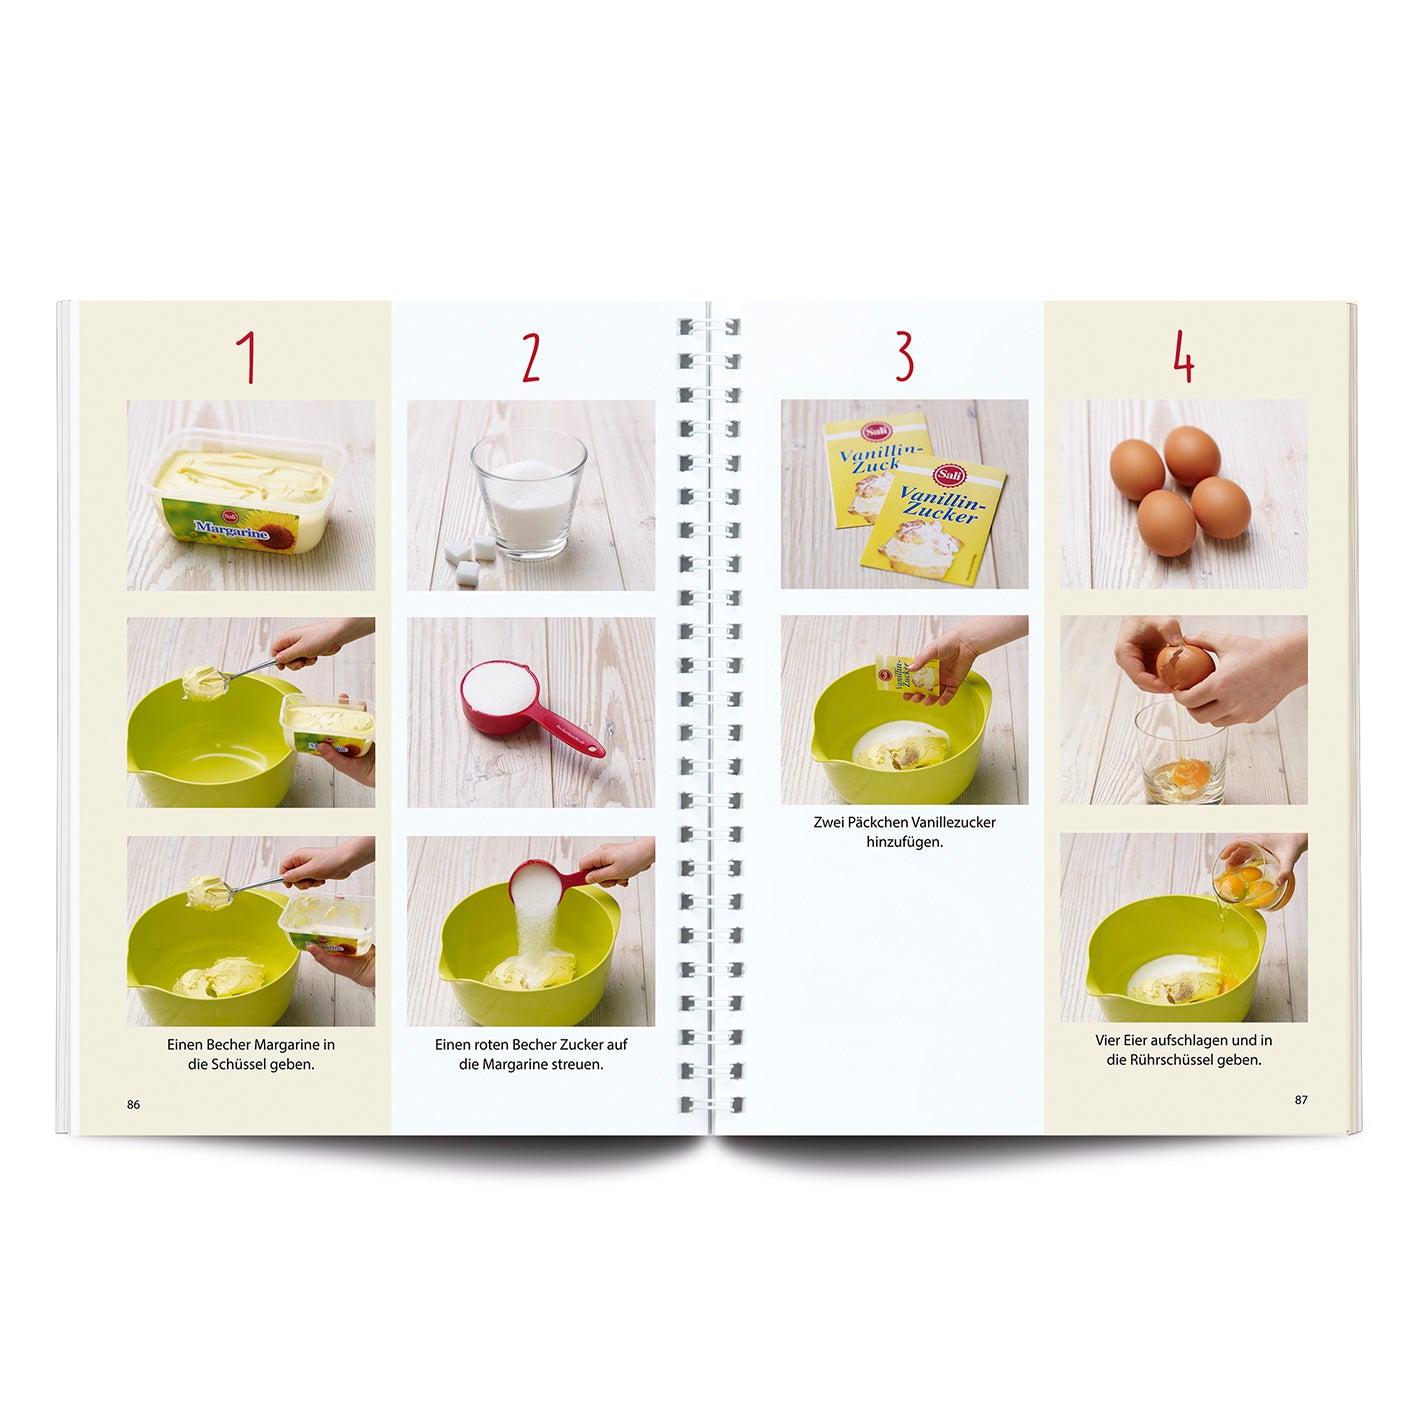 Rezeptbuch (Ergänzungsexemplar ohne Messbecher) Band 2 - Leckere Backideen für Kinder